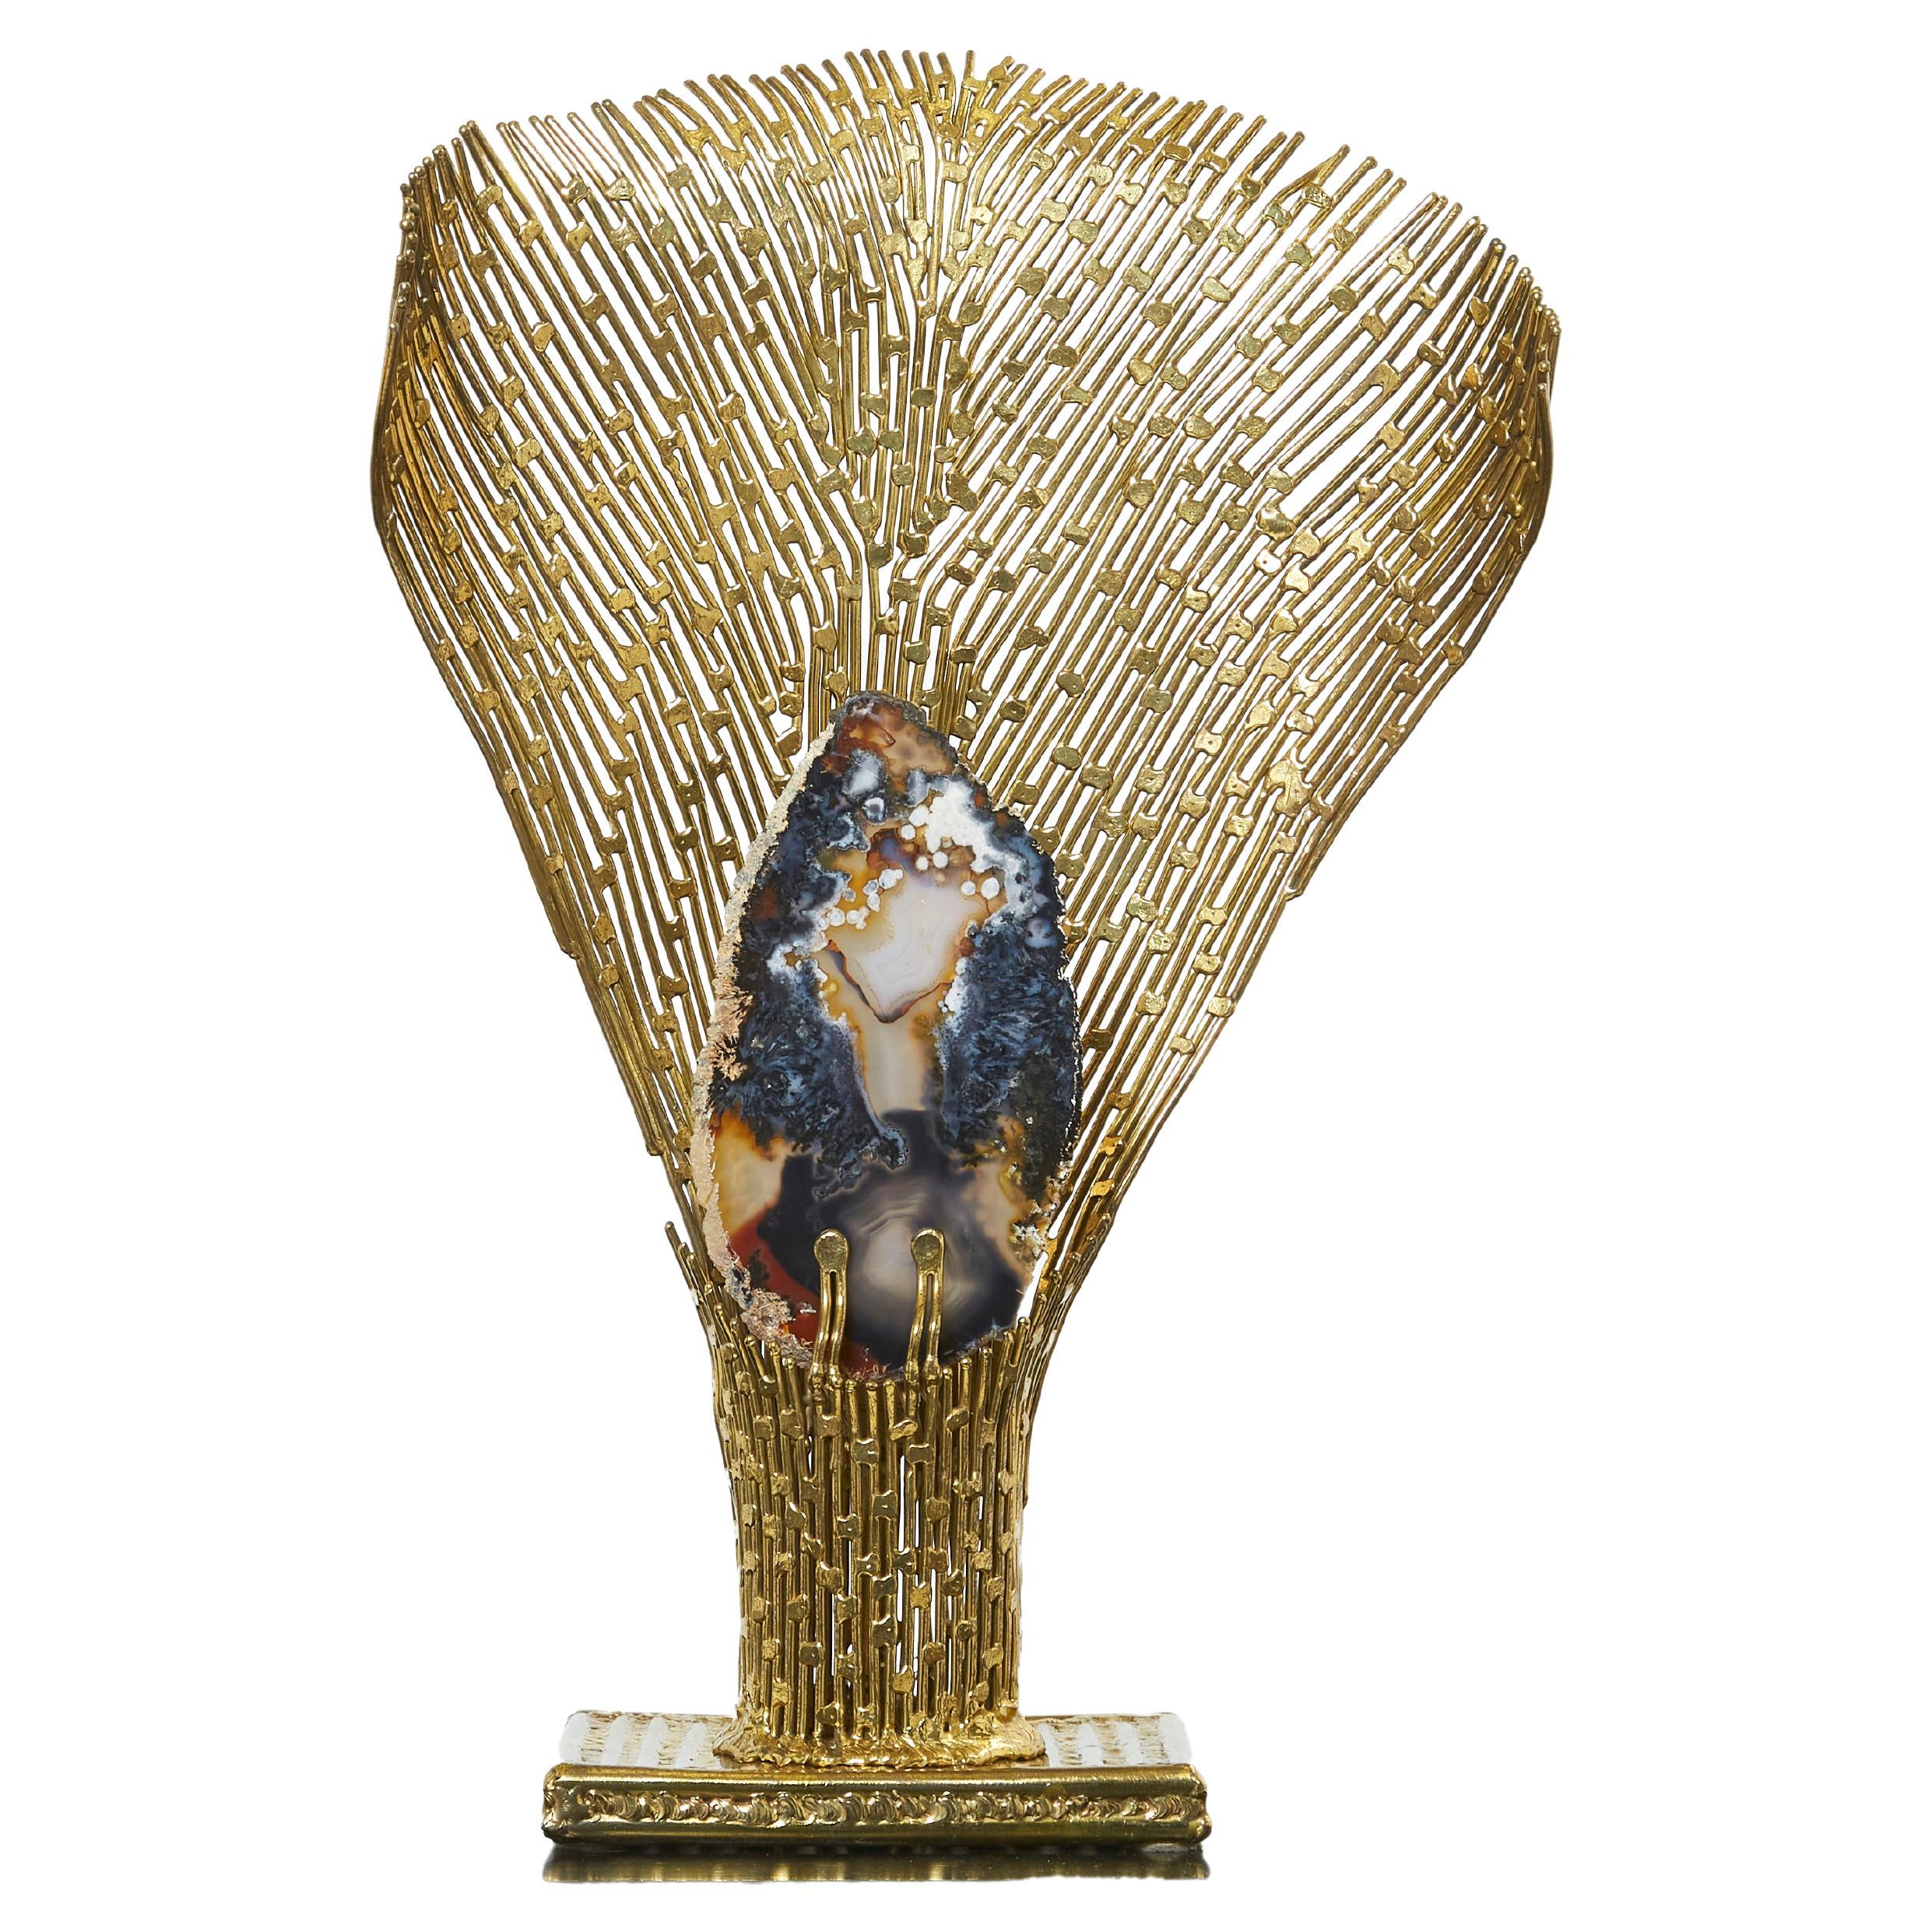 Tischlampe "Nefertiti" von Henri Fernandez aus Messing und Achat, 1970er Jahre